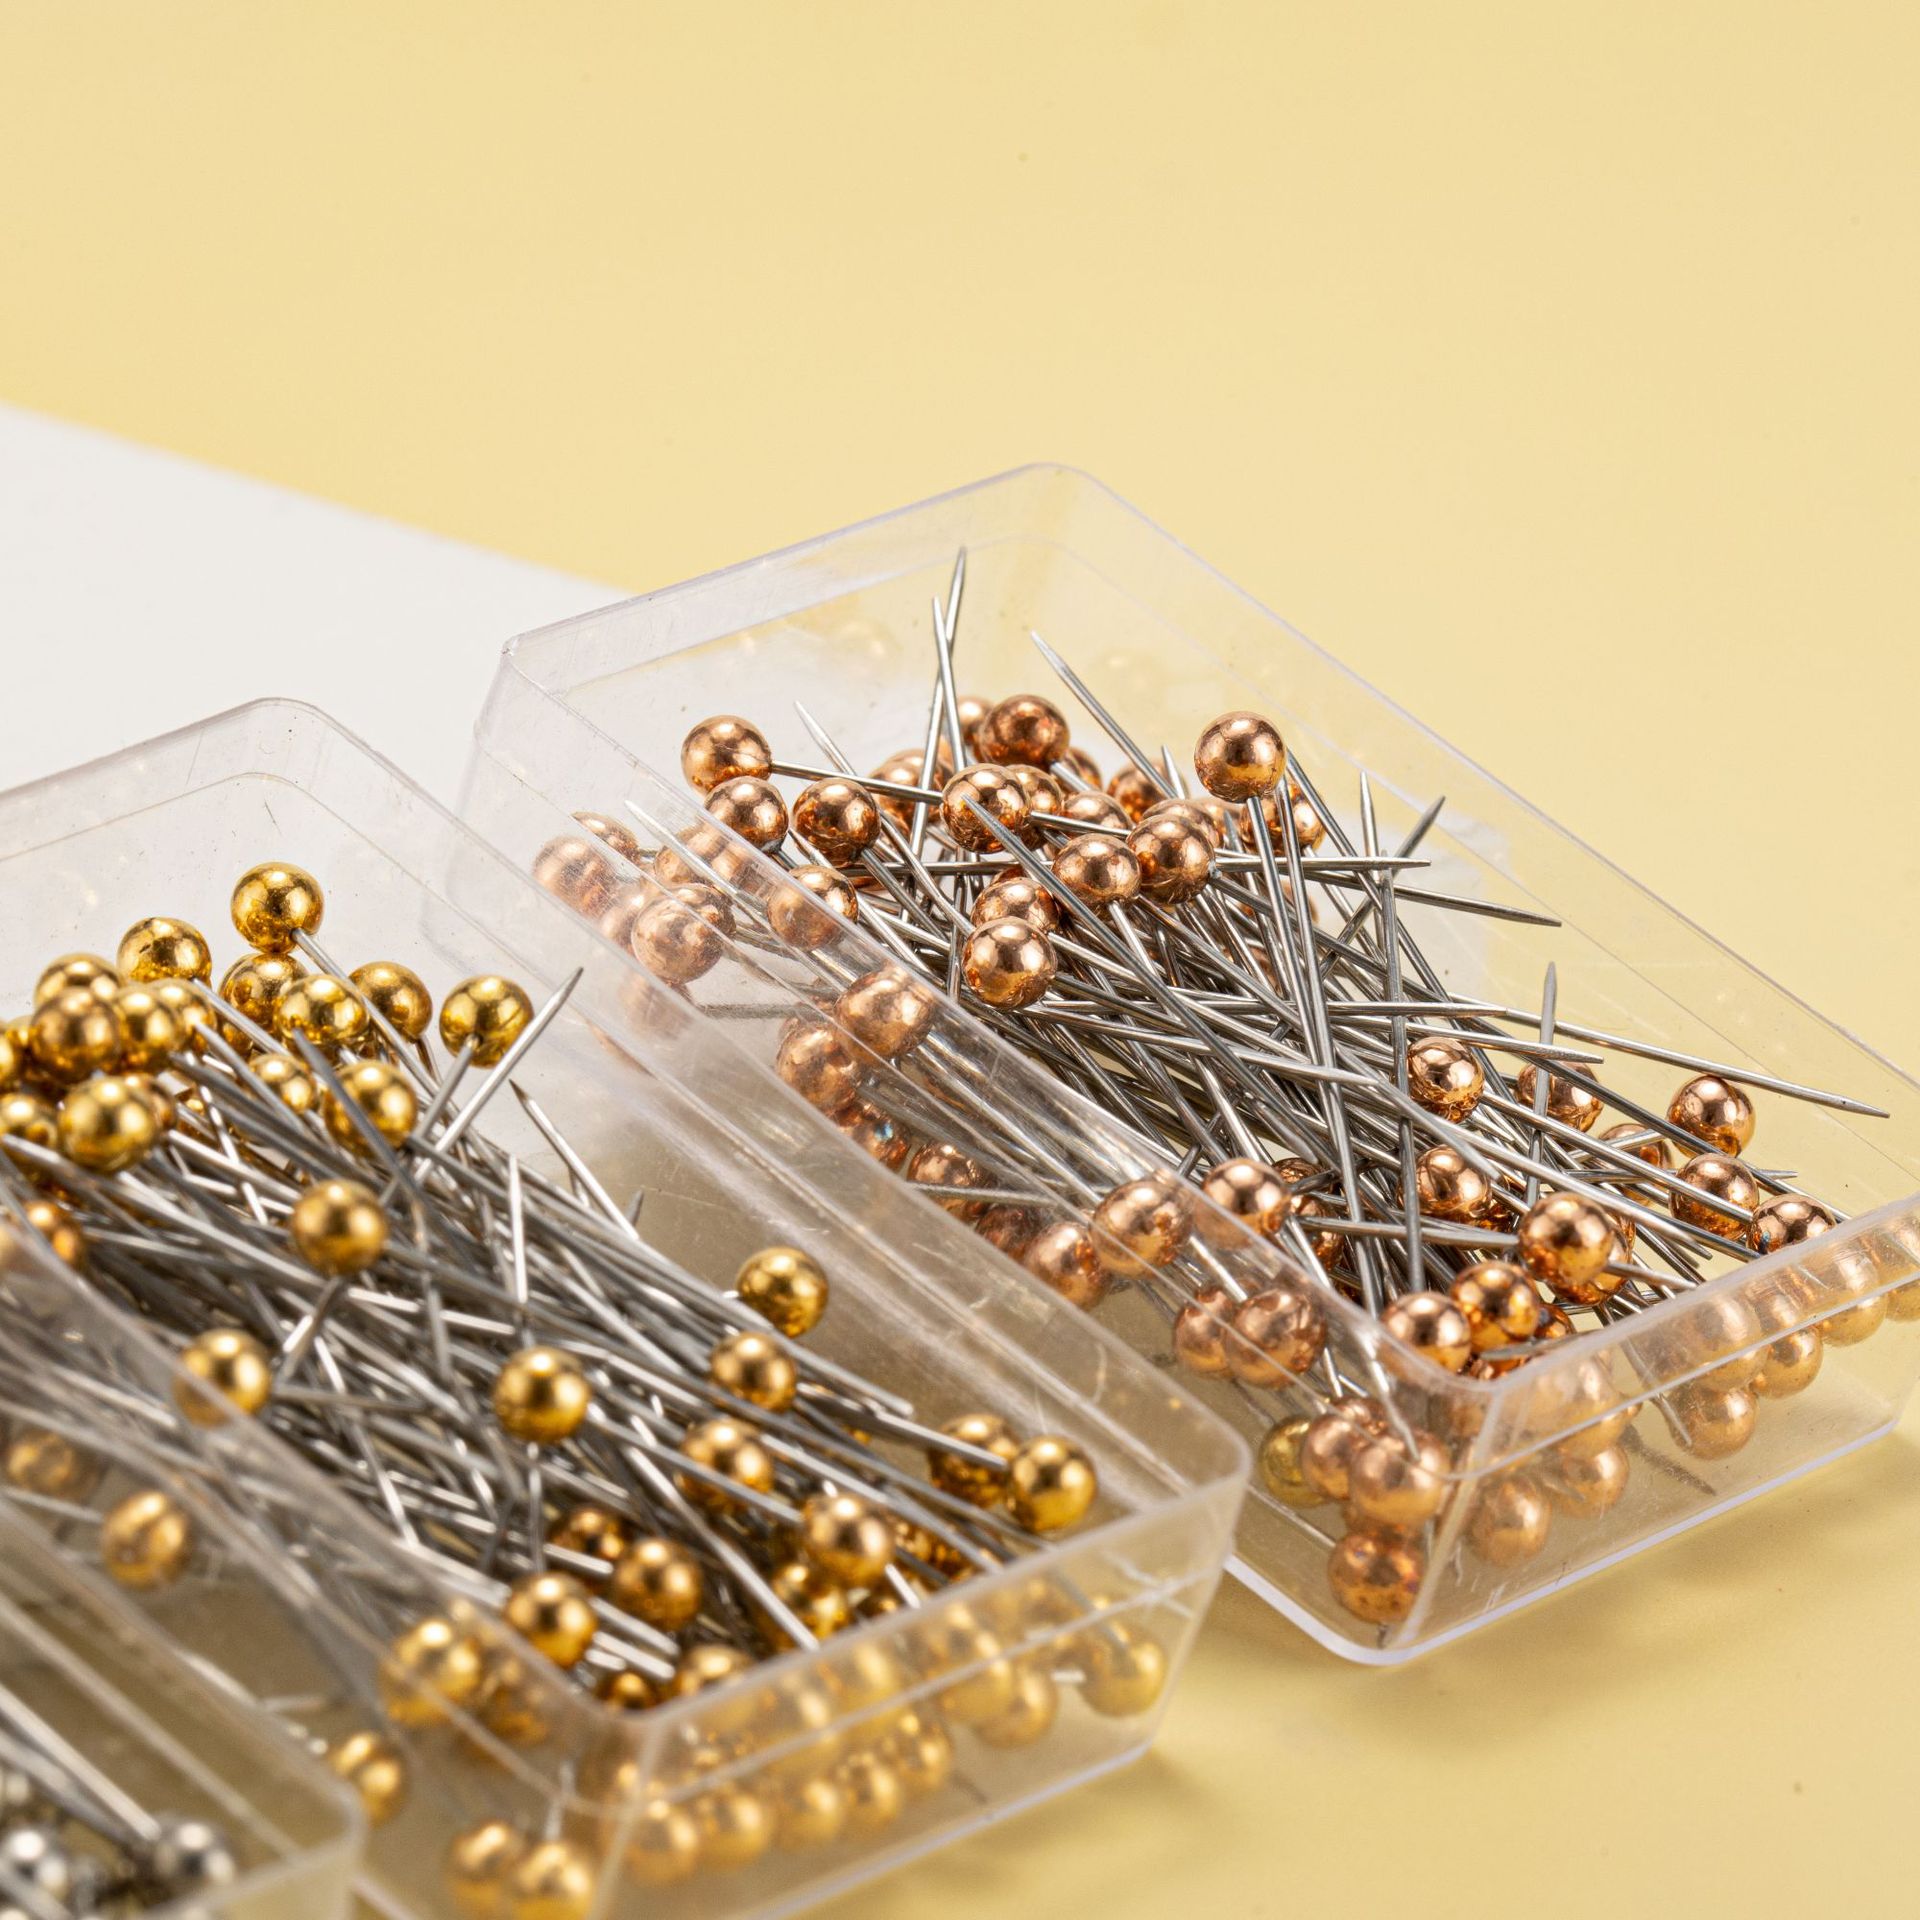 厂家批发 100枚盒装大头针定位针金属色珠光针服装定位编织固定针花艺针详情图2